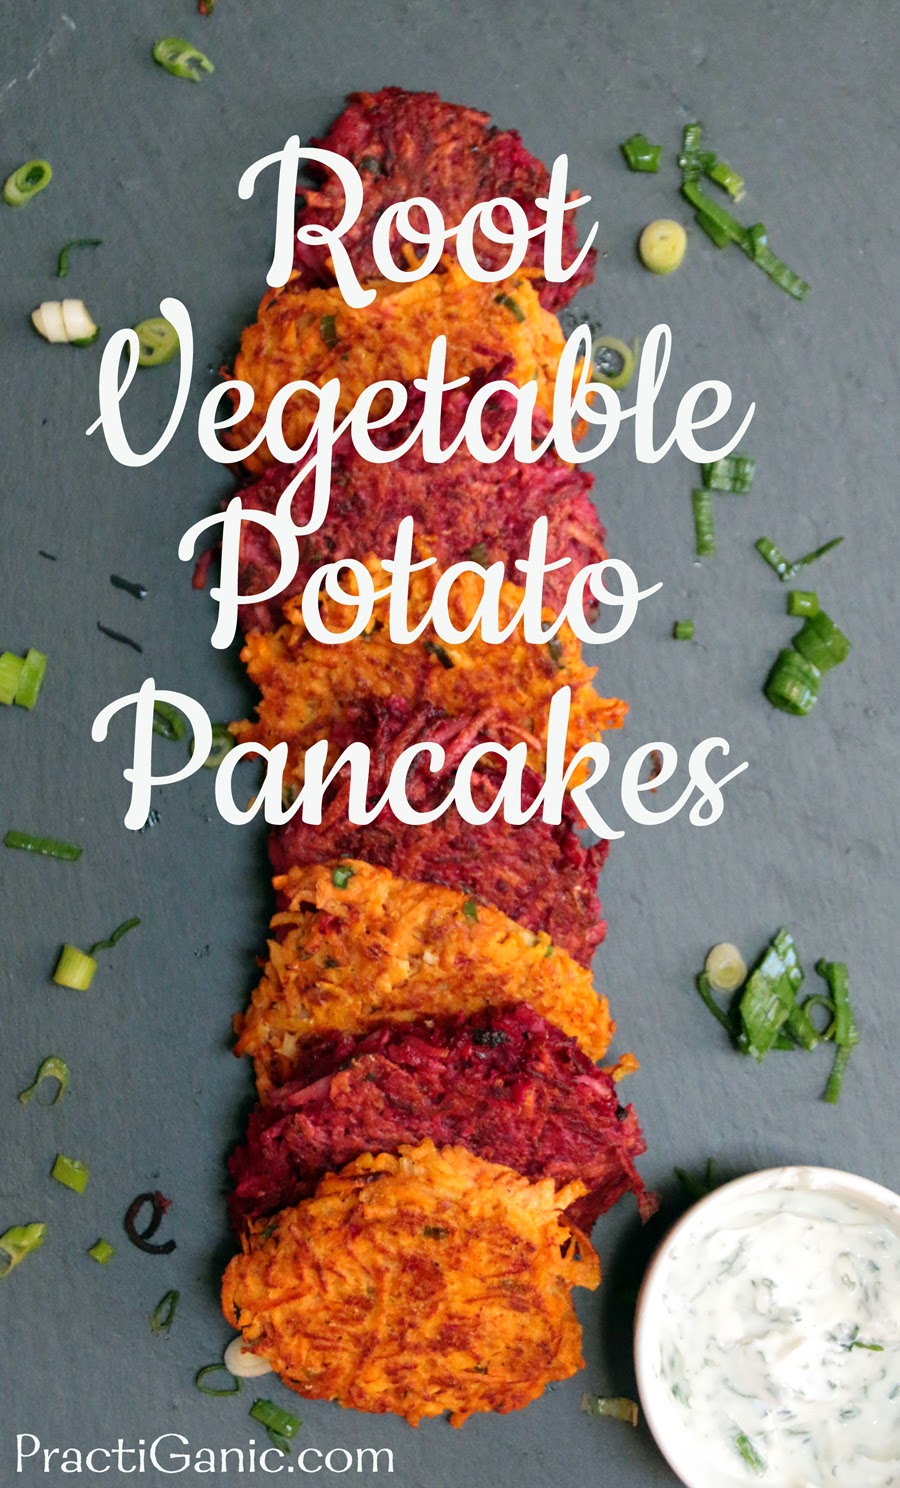 Root Vegetable Potato Pancakes with Yogurt Dip